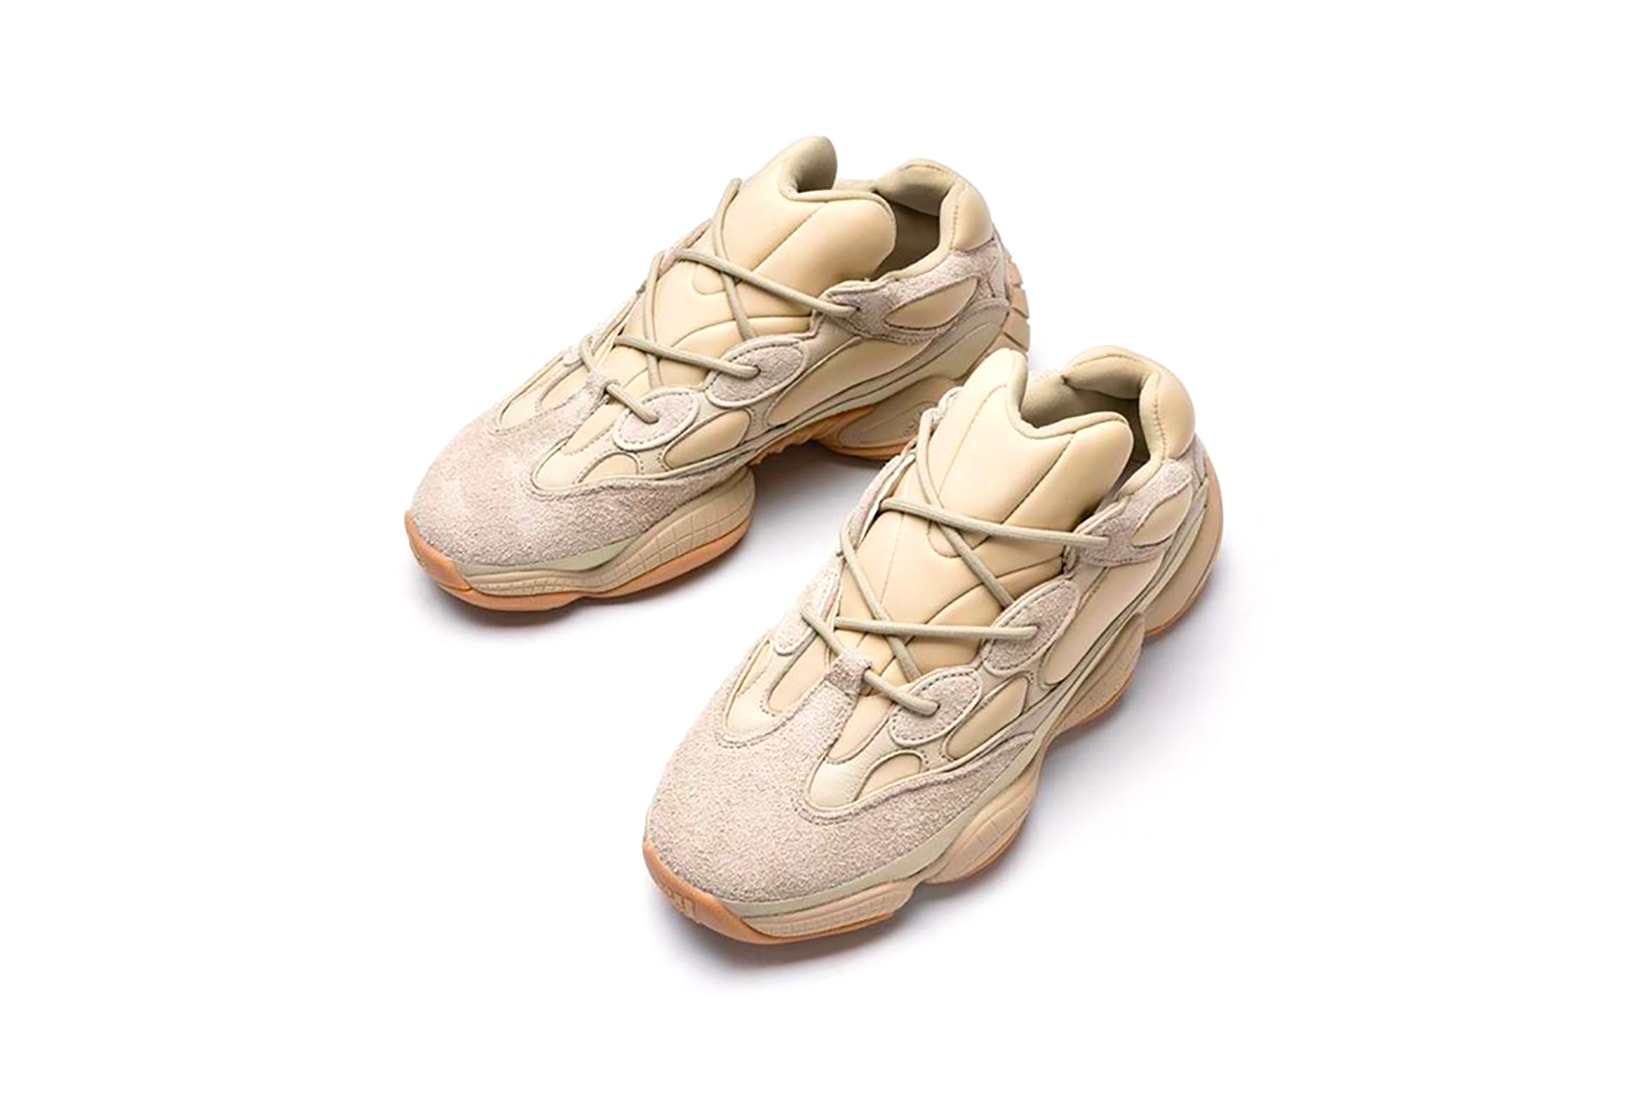 adidas kanye west yeezy 500 stone sneakers beige pink release date footwear shoes sneakerhead